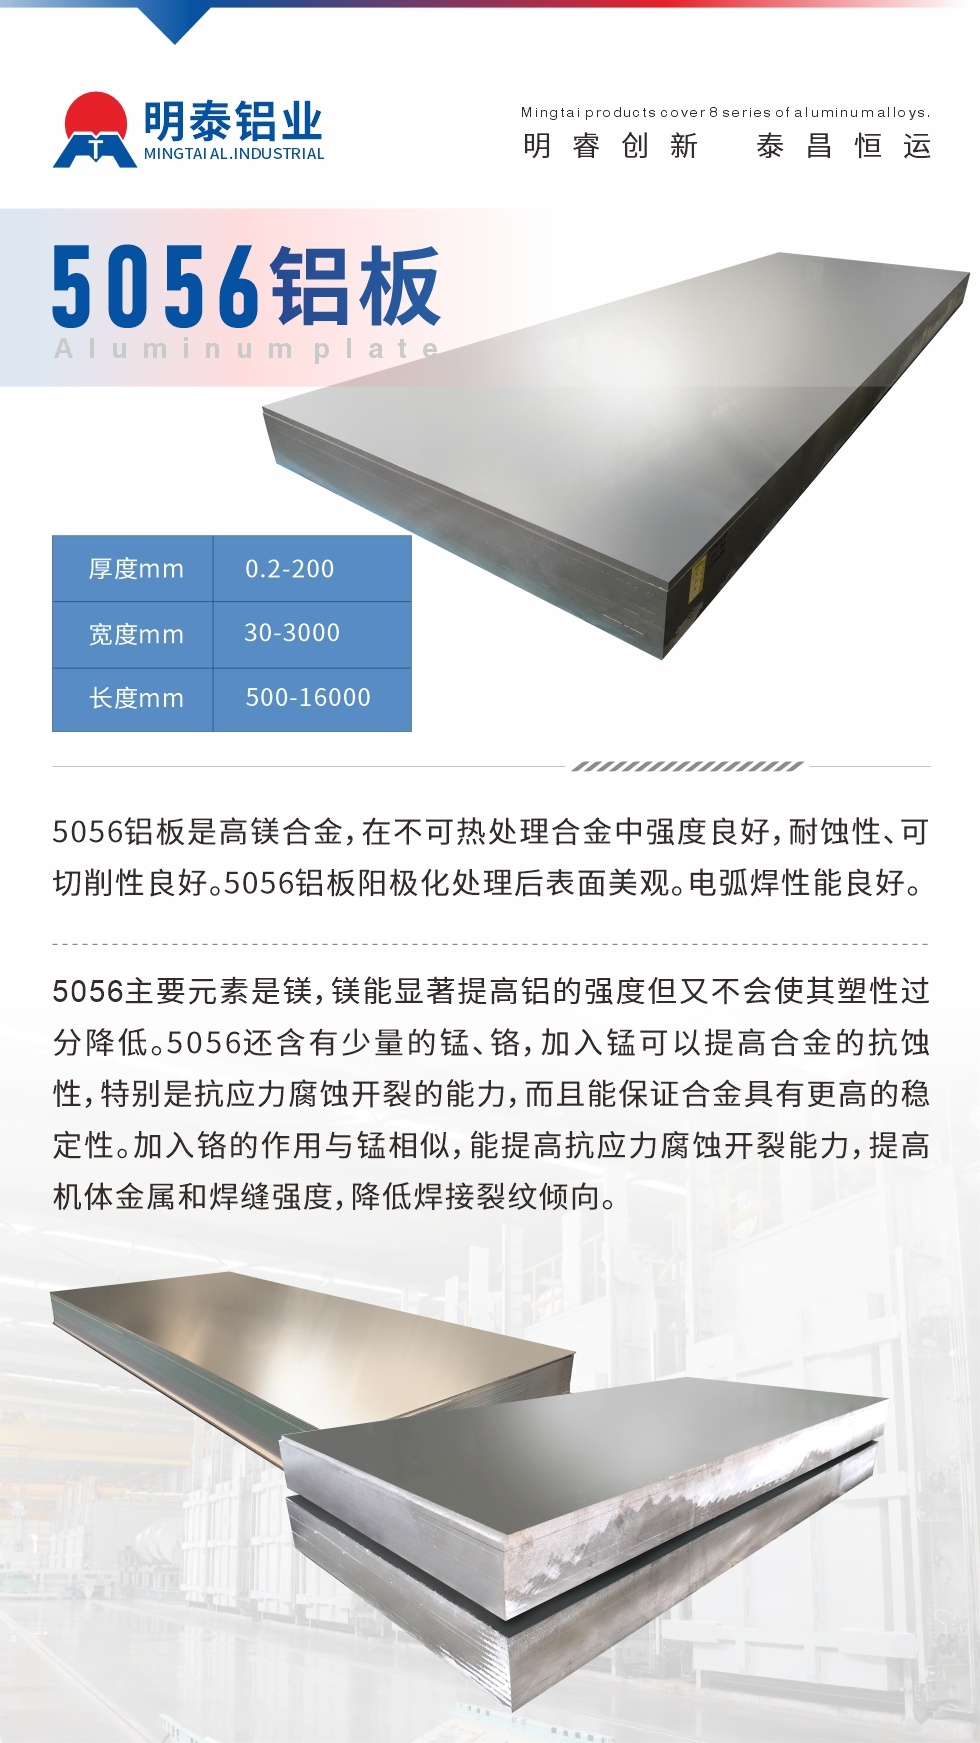 5056铝板介绍
　　5056铝板是高镁合金，在不可热处理合金中强度良好，耐蚀性、可切削性良好。5056铝板阳极化处理后表面美观。电弧焊性能良好。
　　5056主要元素是镁，镁能显著提高铝的强度但又不会使其塑性过分降低。5056还含有少量的锰、铬，加入锰可以提高合金的抗蚀性，特别是抗应力腐蚀开裂的能力，而且能保证合金具有更高的稳定性。加入铬的作用与锰相似，能提高抗应力腐蚀开裂能力，提高机体金属和焊缝强度，降低焊接裂纹倾向。